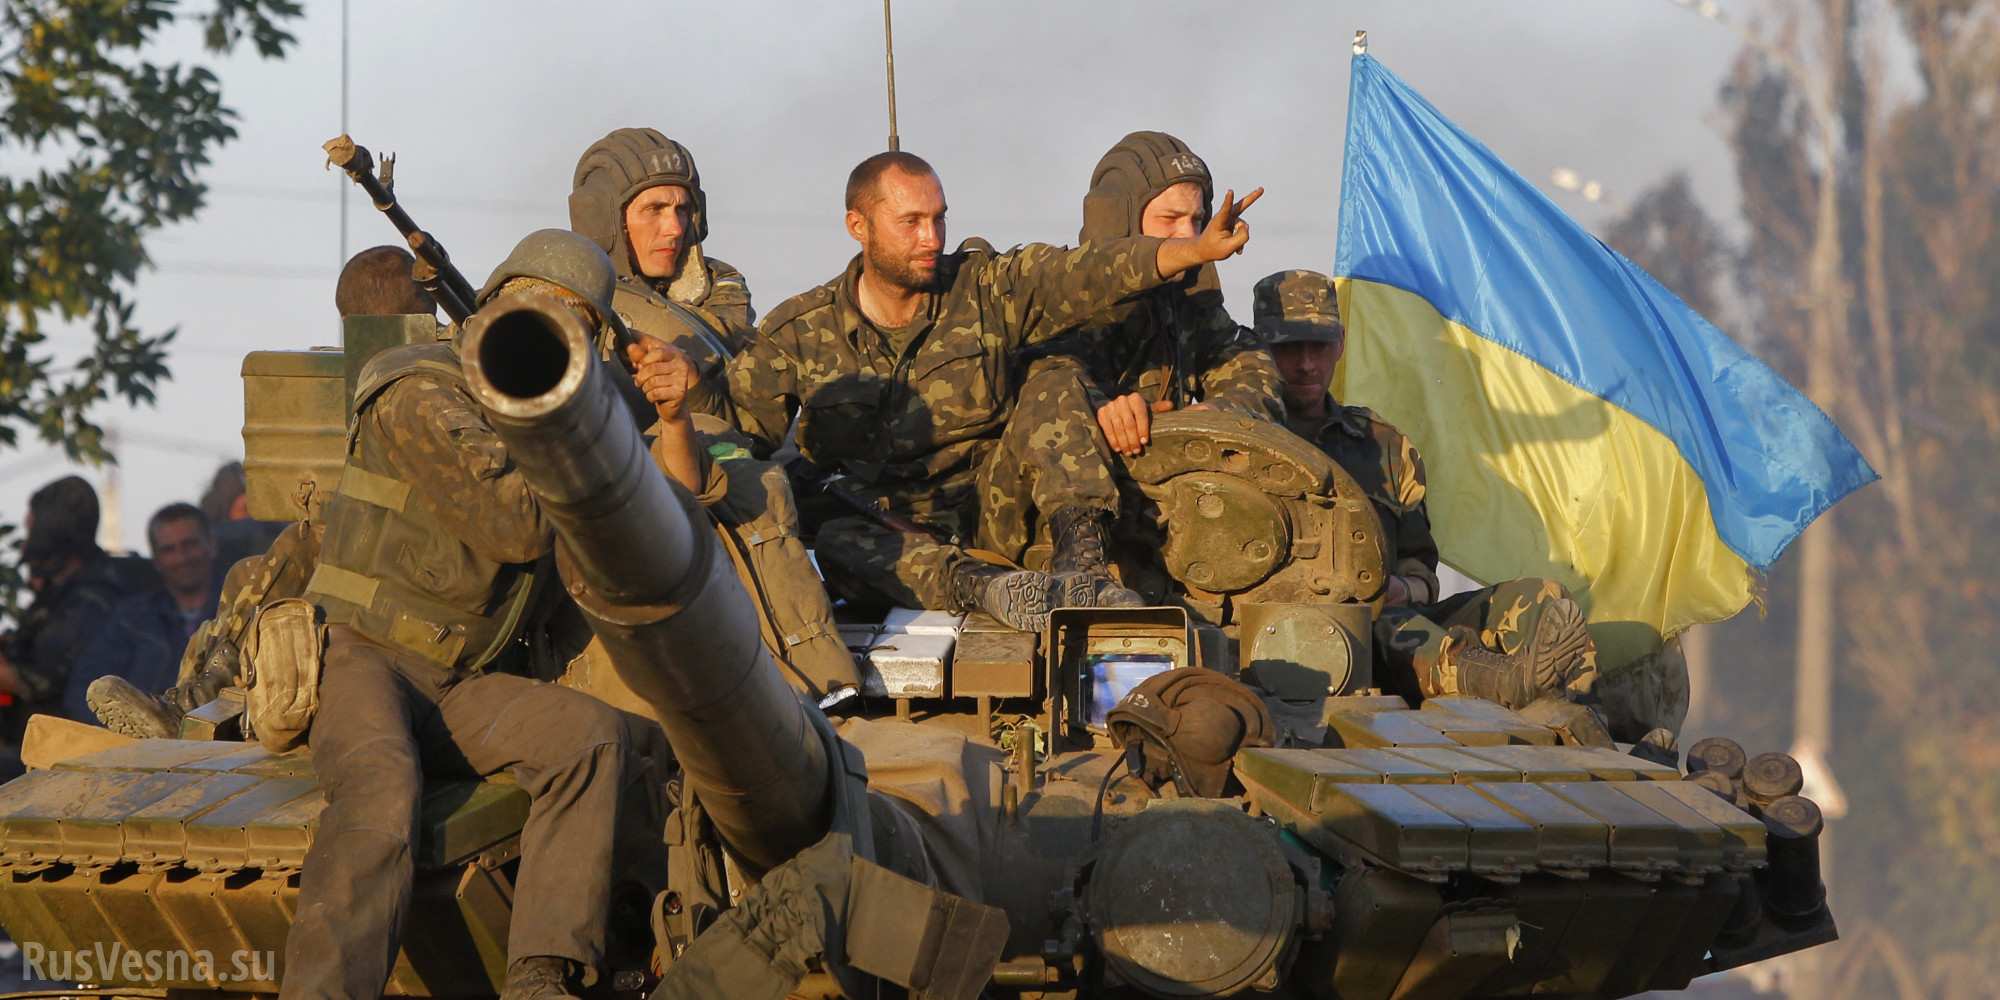 «Патриотизма нет. Идут на войну заработать», — военный ВСУ рассказал, за что воюют украинцы